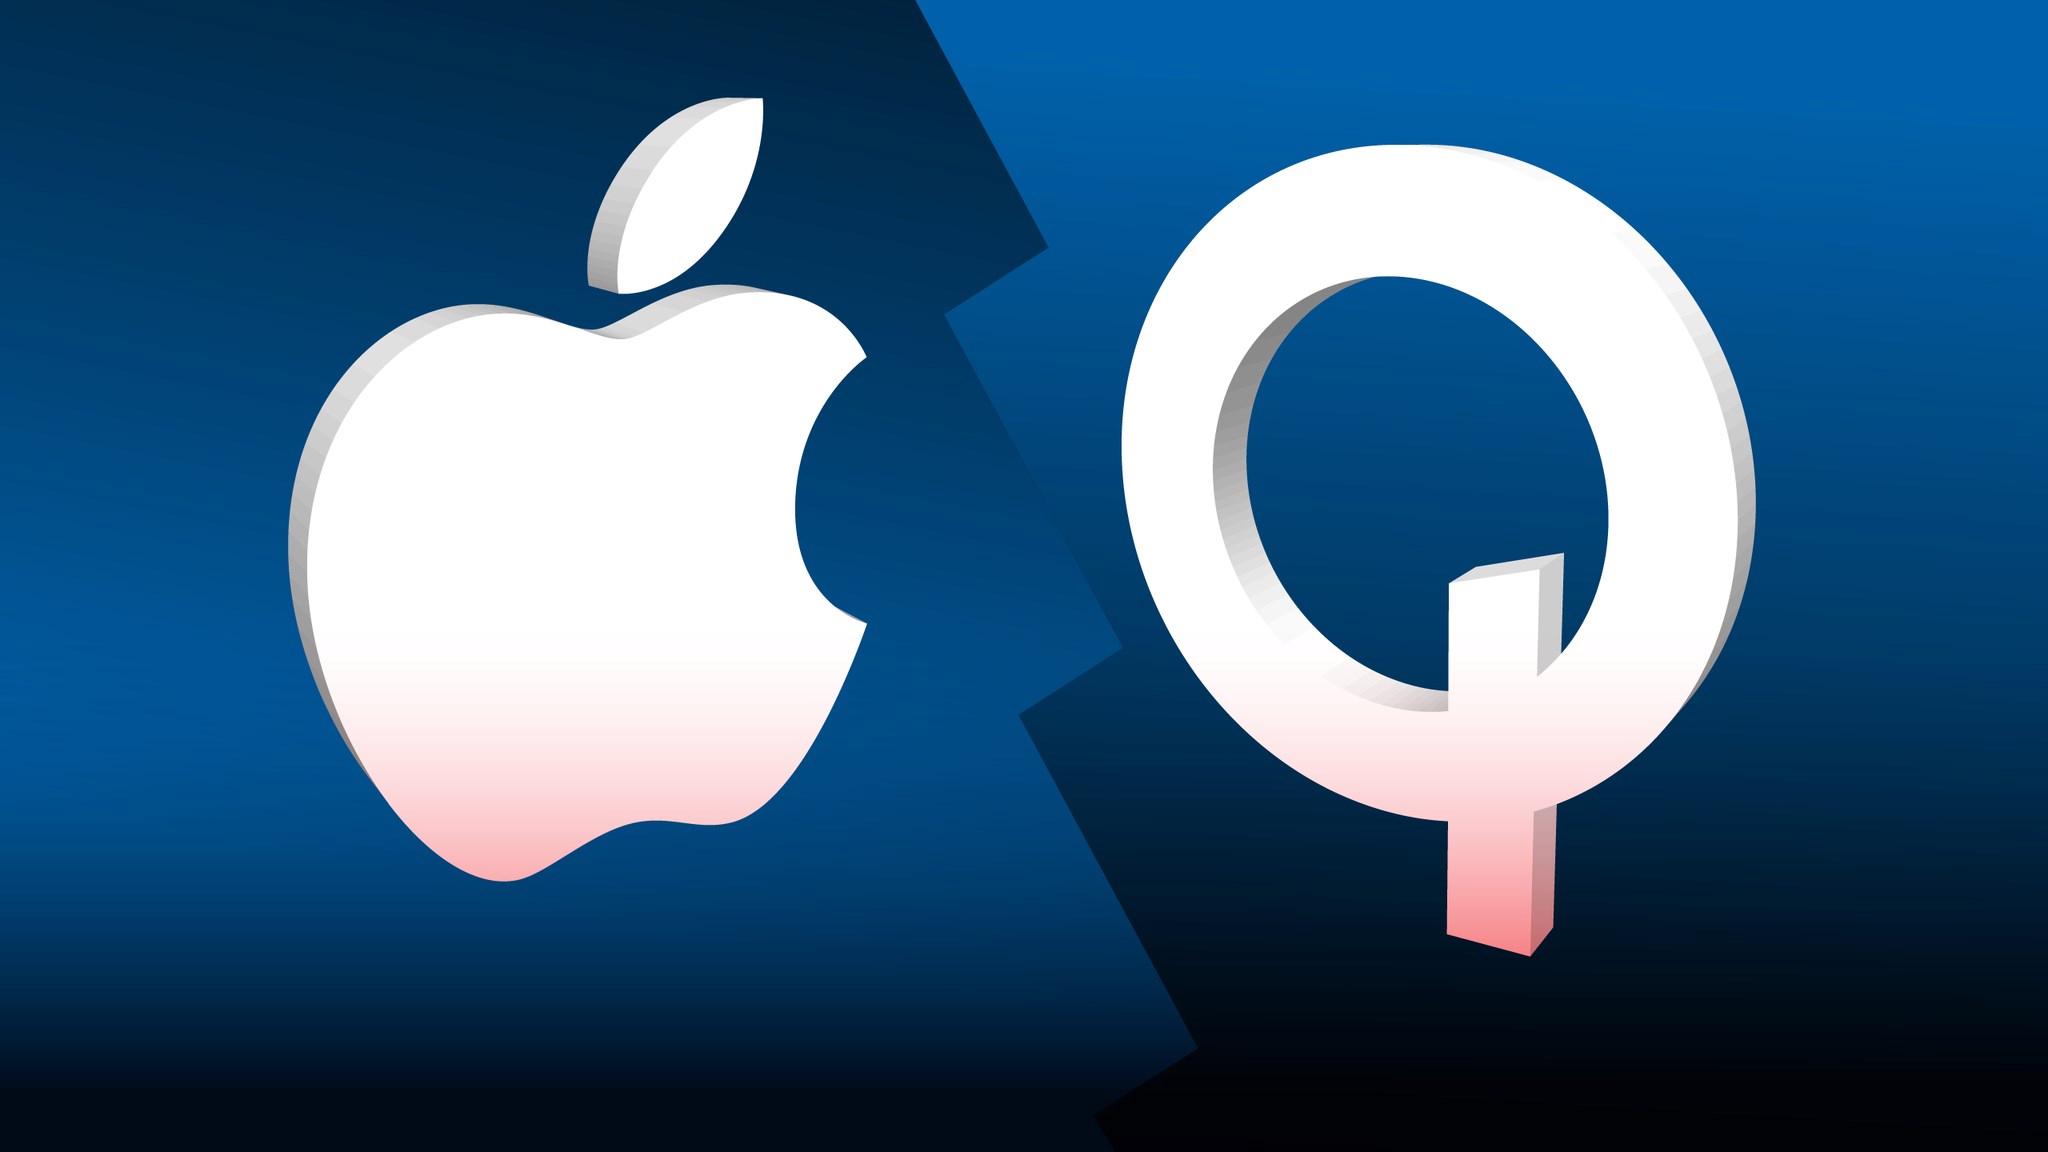 Qualcomm anlaşmayı uzattı: iPhone’lar 2027’ye kadar Qualcomm’un modemlerini kullanacak